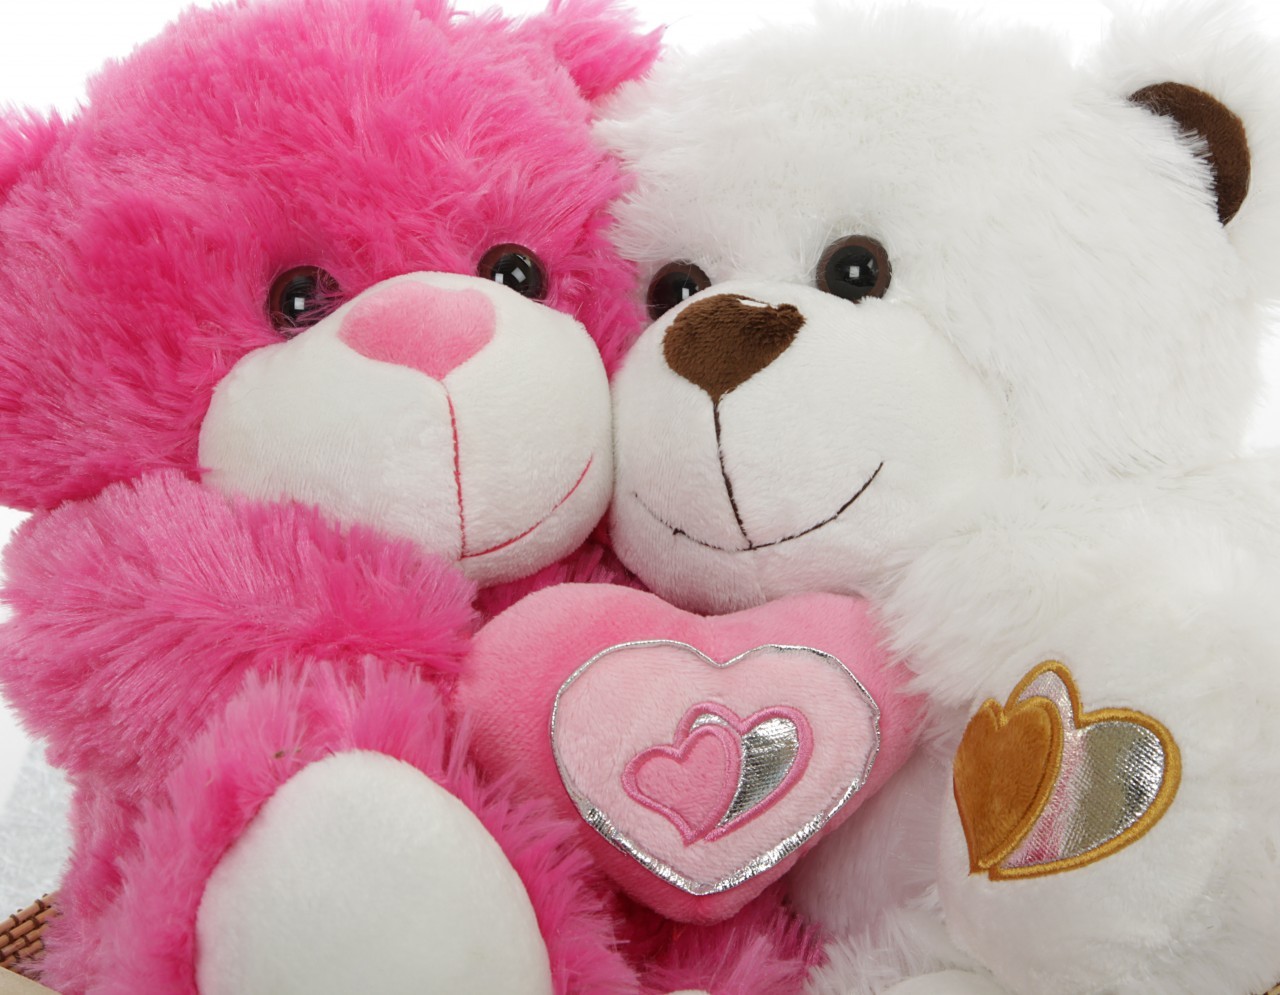 cute teddy wallpaper,stuffed toy,teddy bear,plush,toy,pink